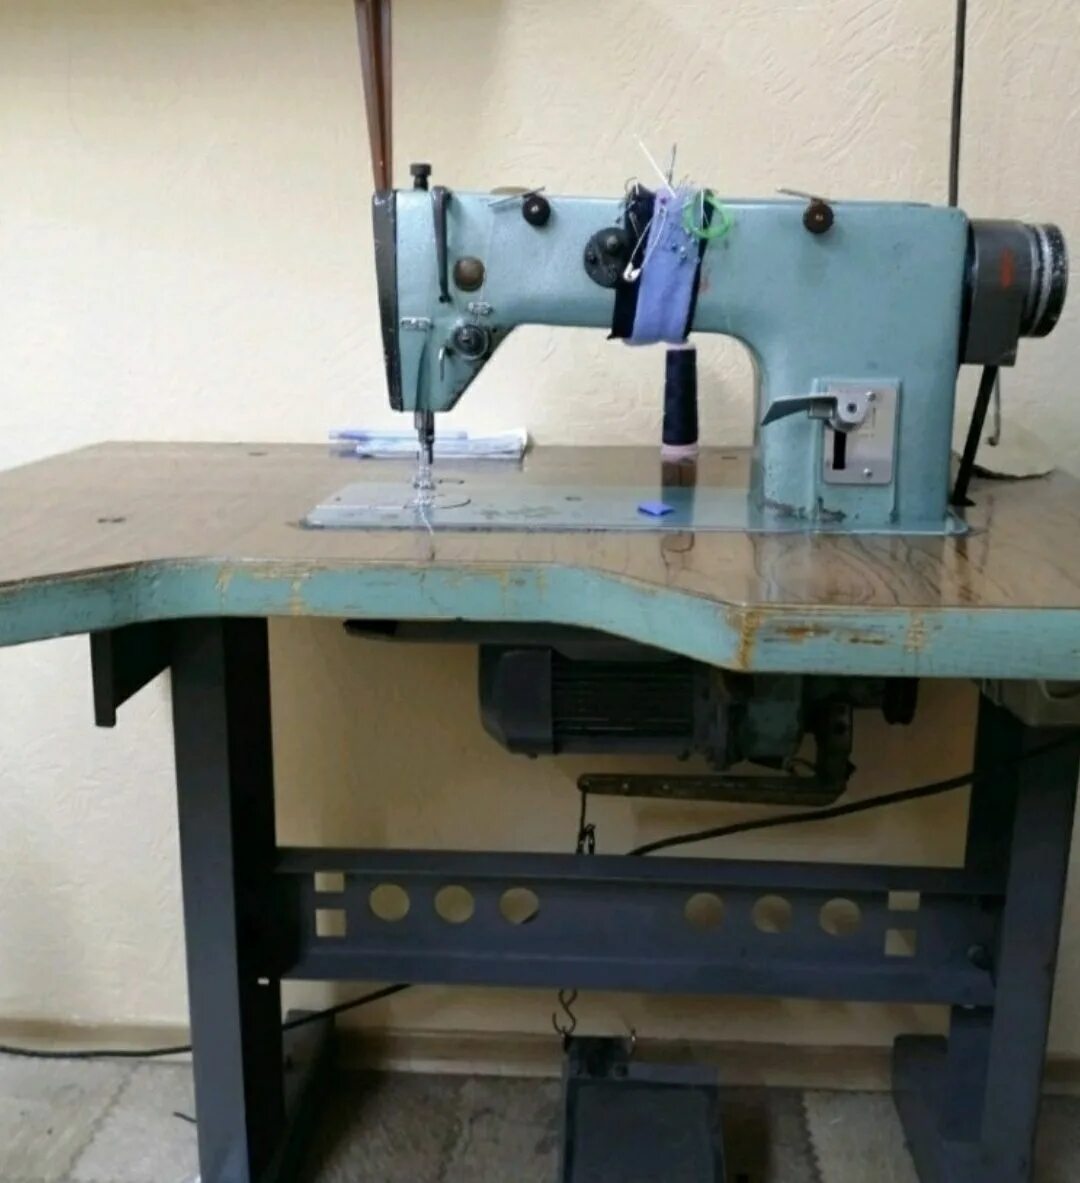 1022м швейная машина. Промышленная швейная машинка 1022. Швейная машинка Промышленная кл 1022. Швейная машина 1022 м класса. Швейная машинка 1022